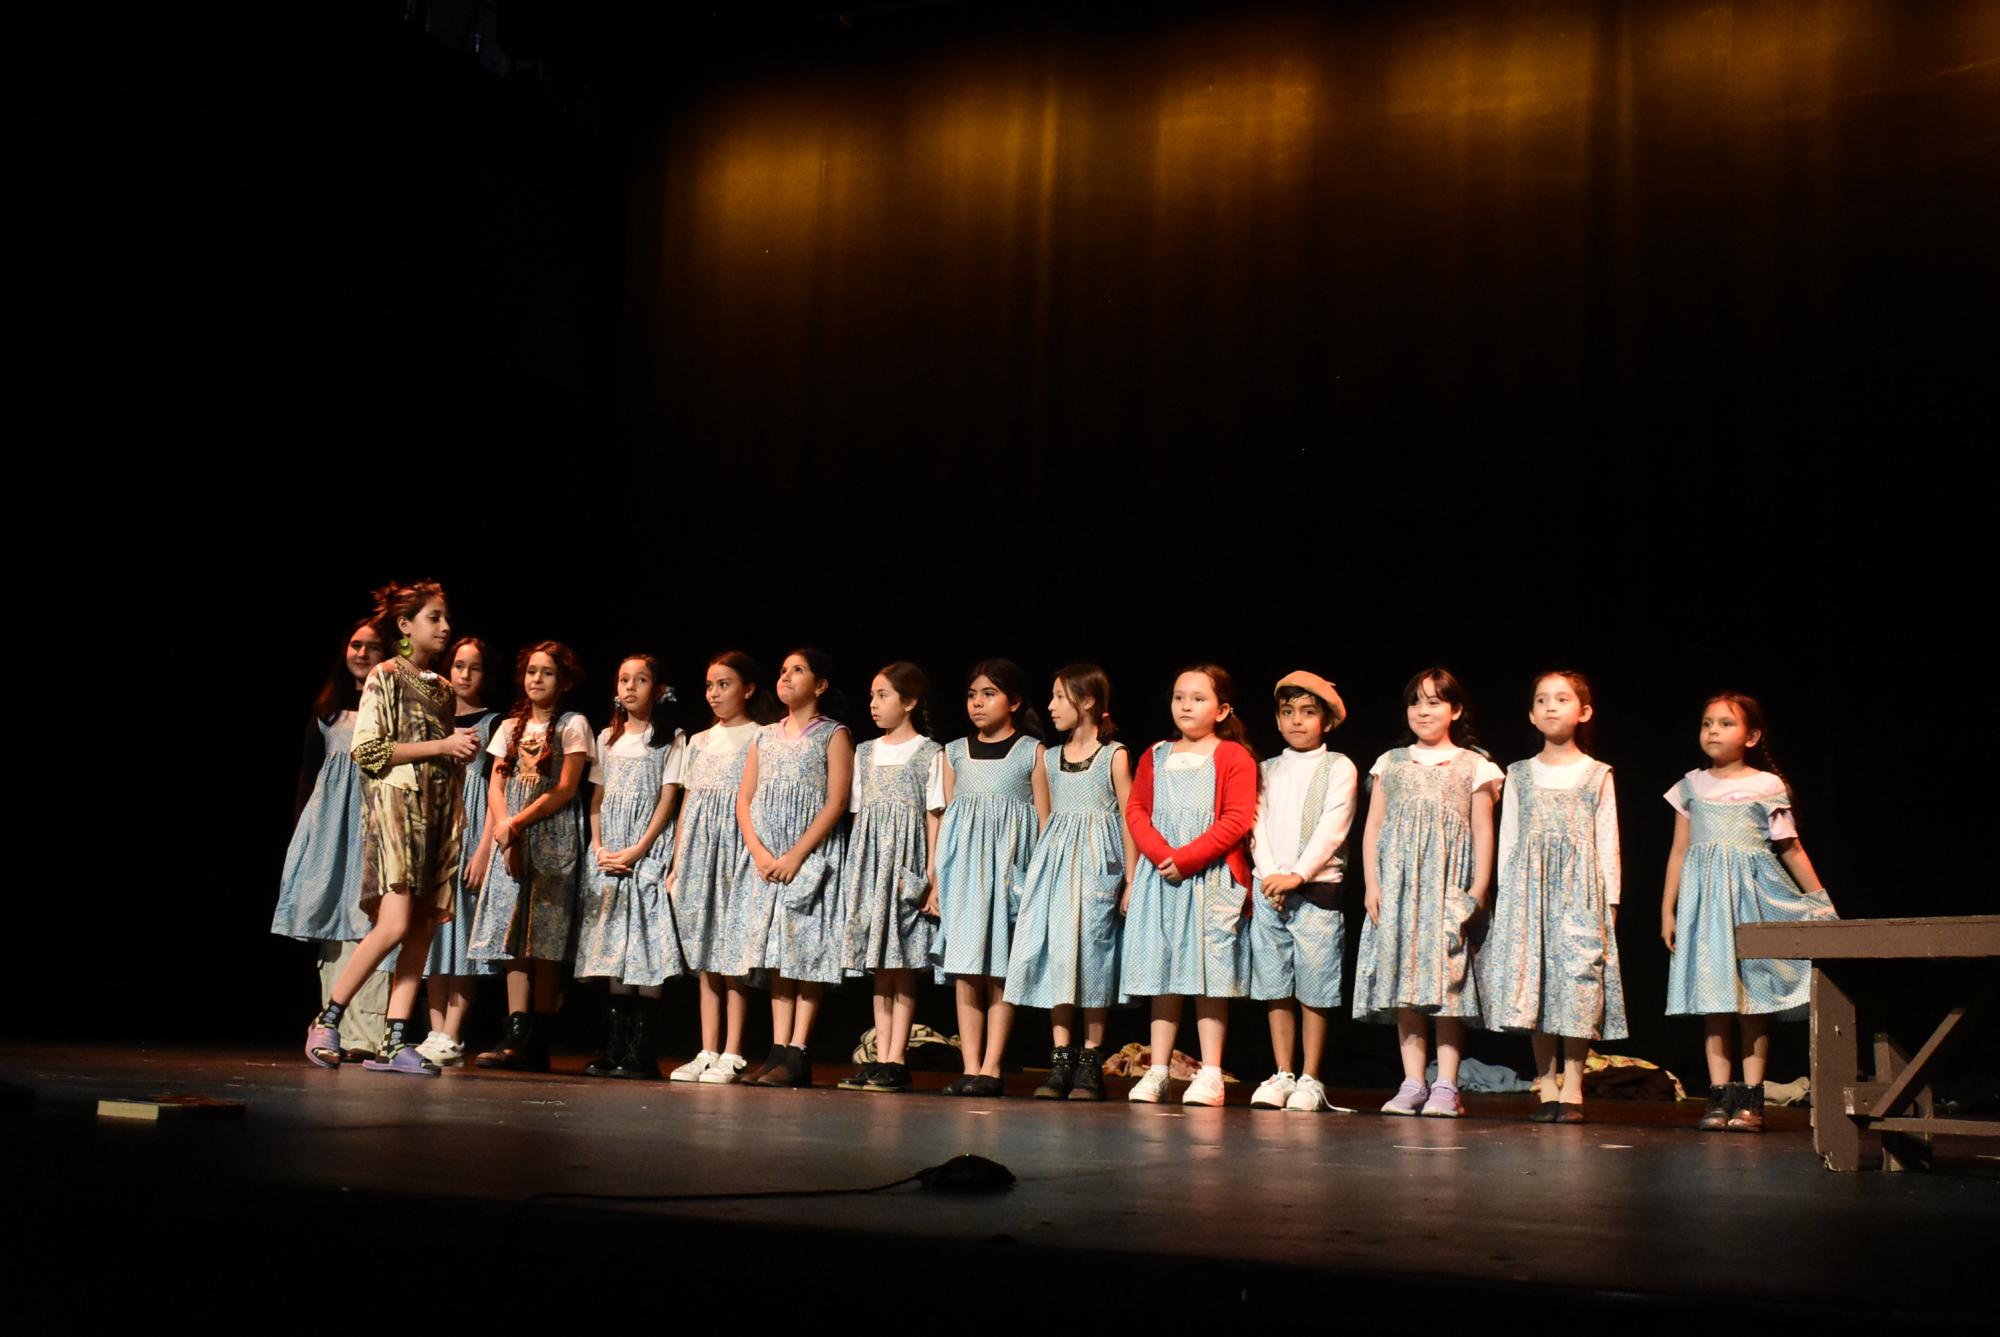 $!Los alumnos del taller de teatro representan a los huérfanos del orfanato de la señorita Hannigan.